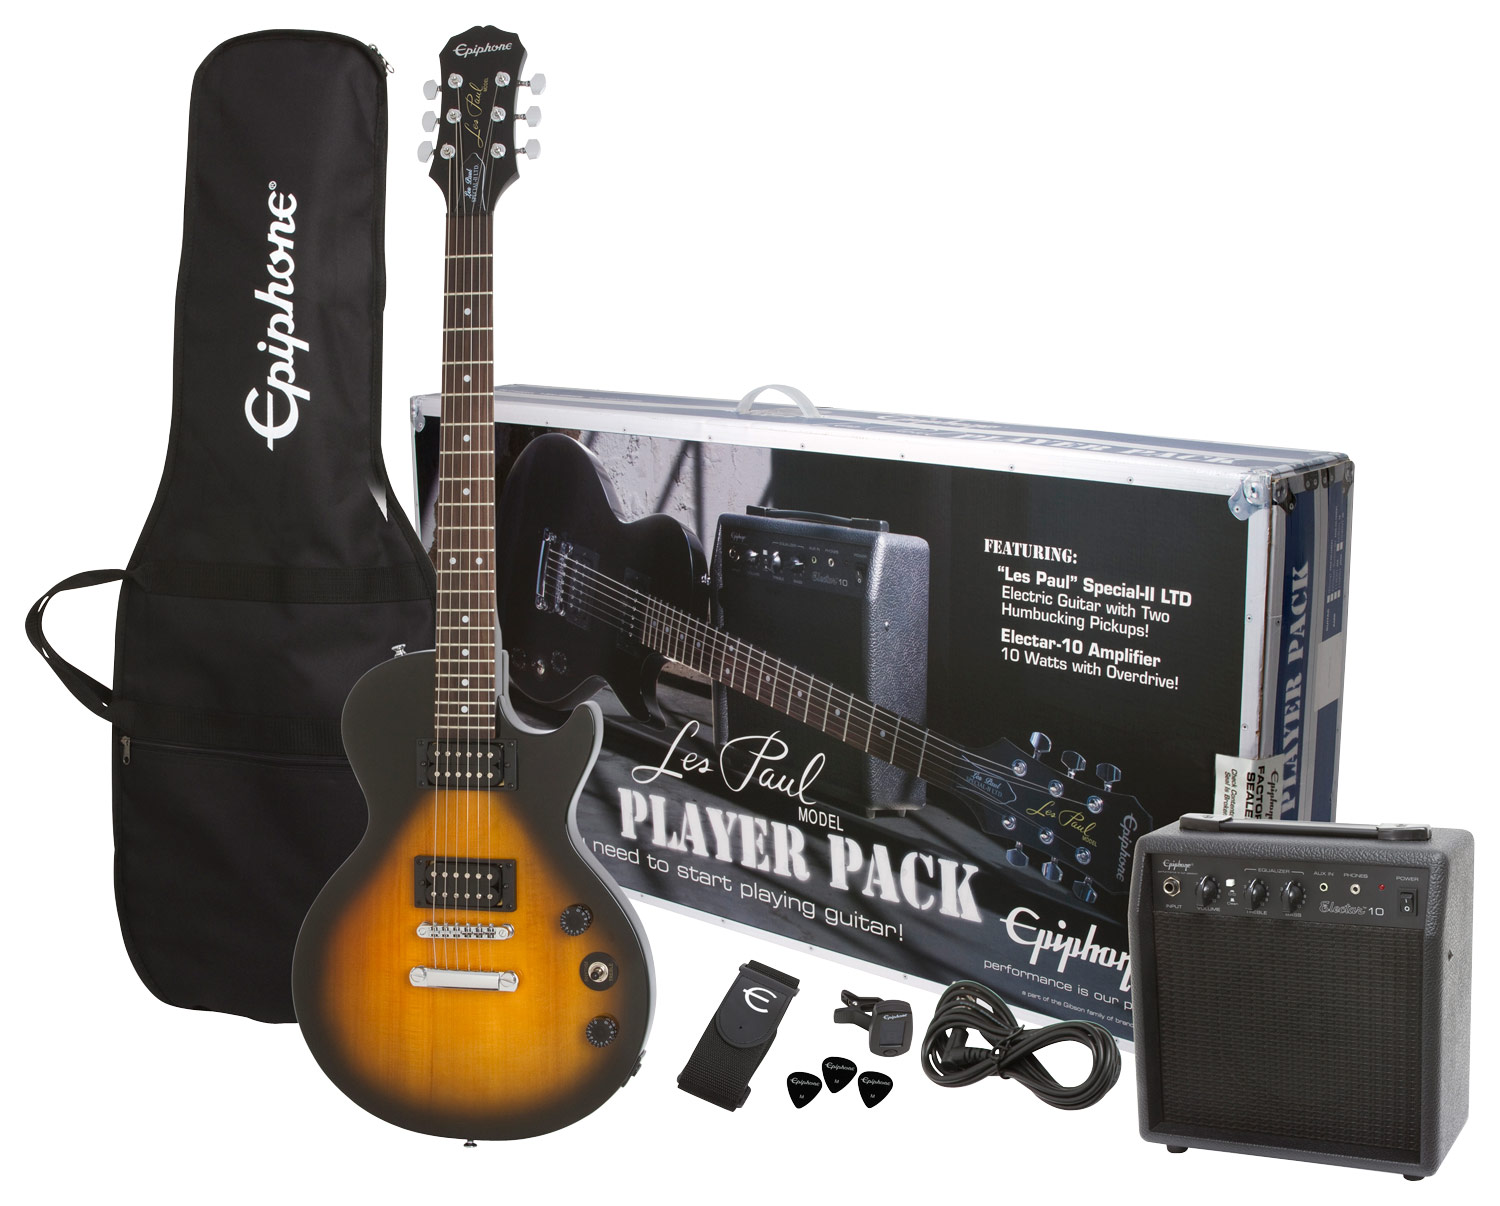 At afsløre buffet Nedgang Best Buy: Epiphone Les Paul Special-II LTD Electric Guitar Player Pack  Vintage Sunburst EPI PPEGEGL1 VS